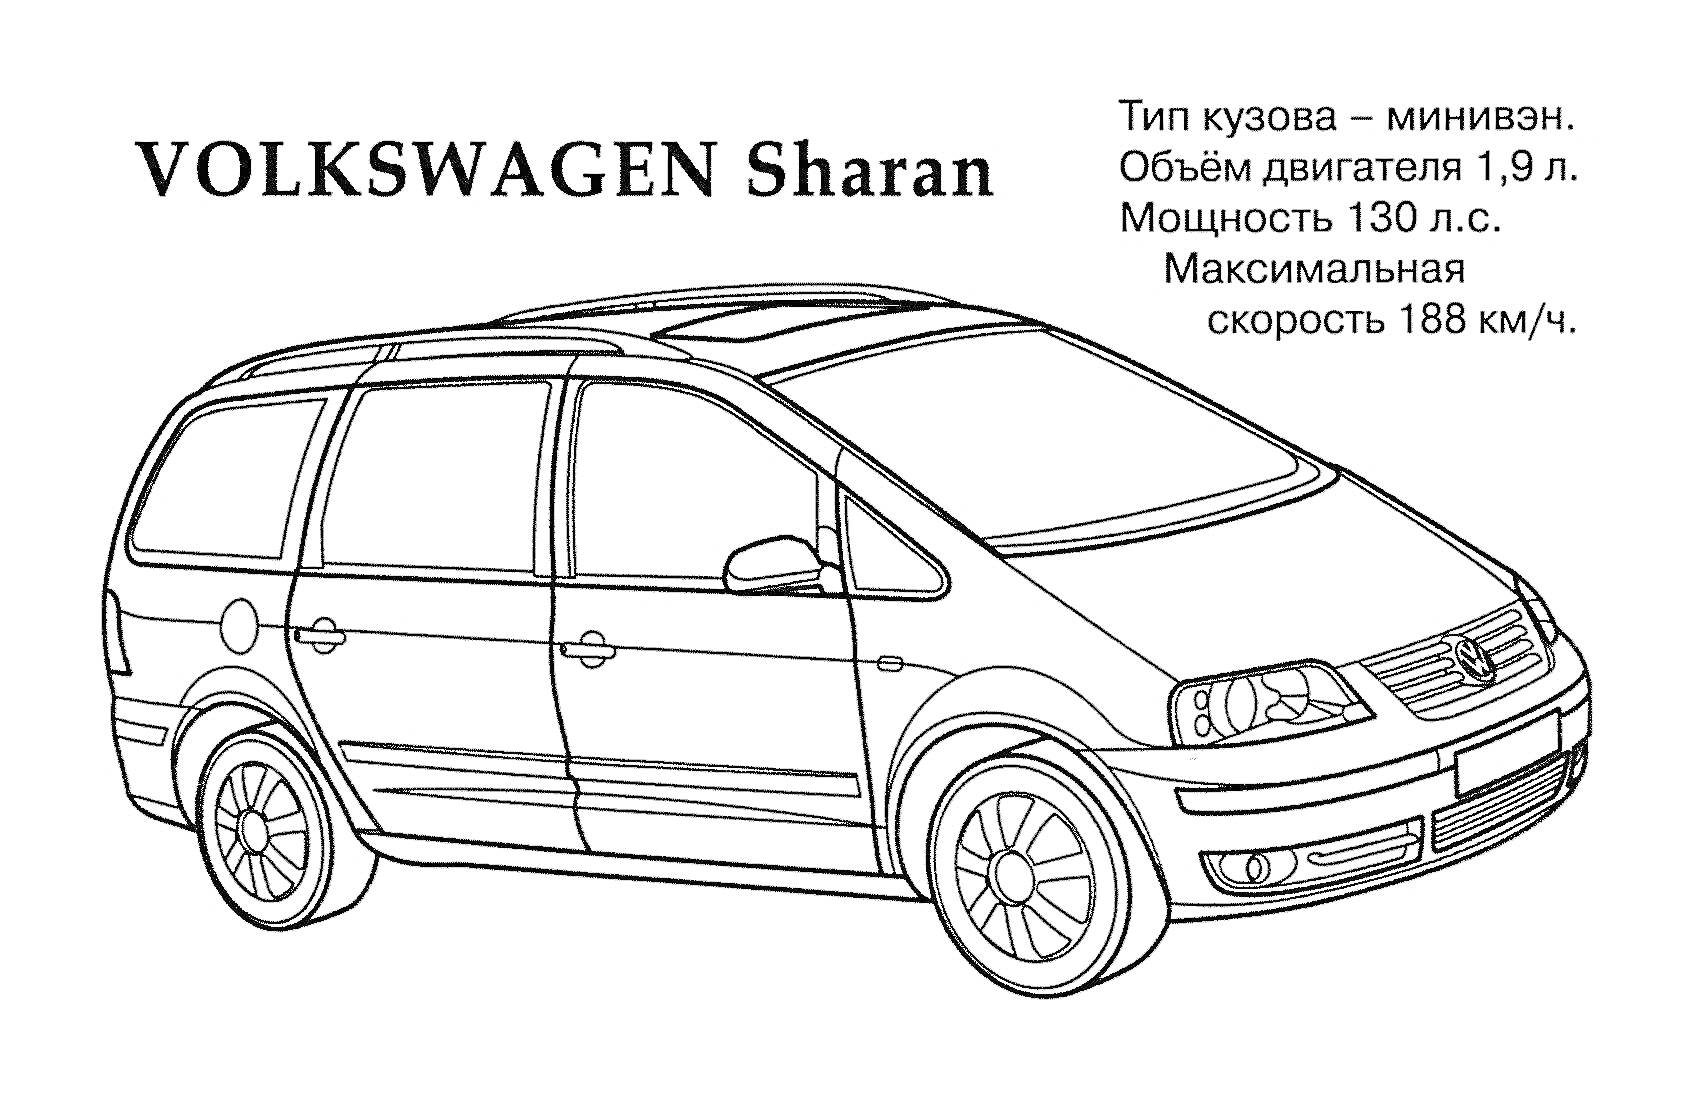 Раскраска VOLKSWAGEN Sharan с информацией о типе кузова, объеме двигателя, мощности и максимальной скорости